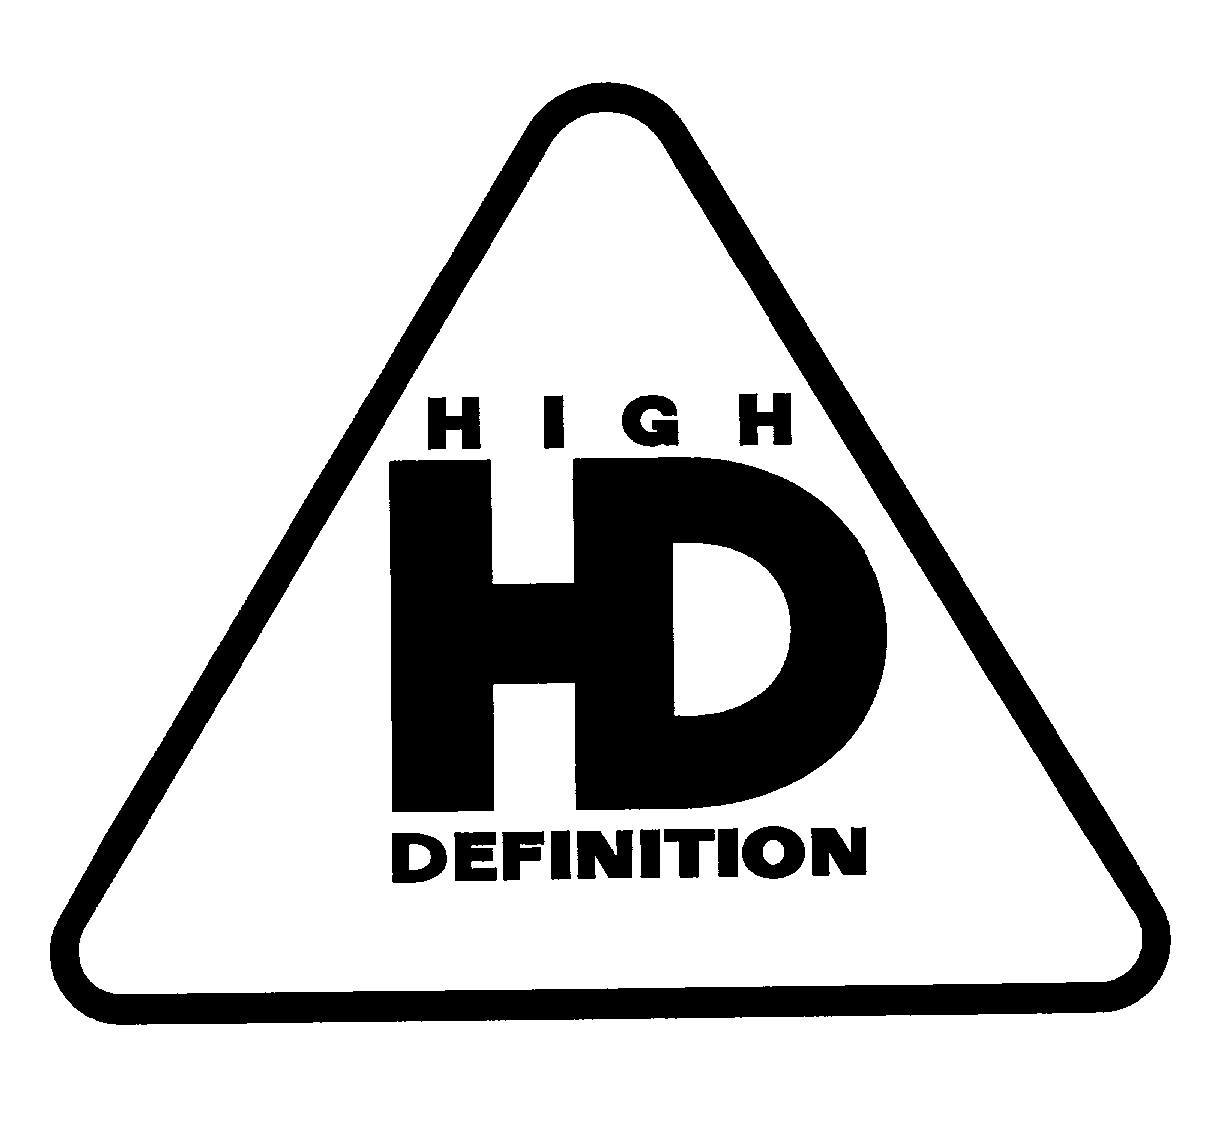  HIGH DEFINITION HD